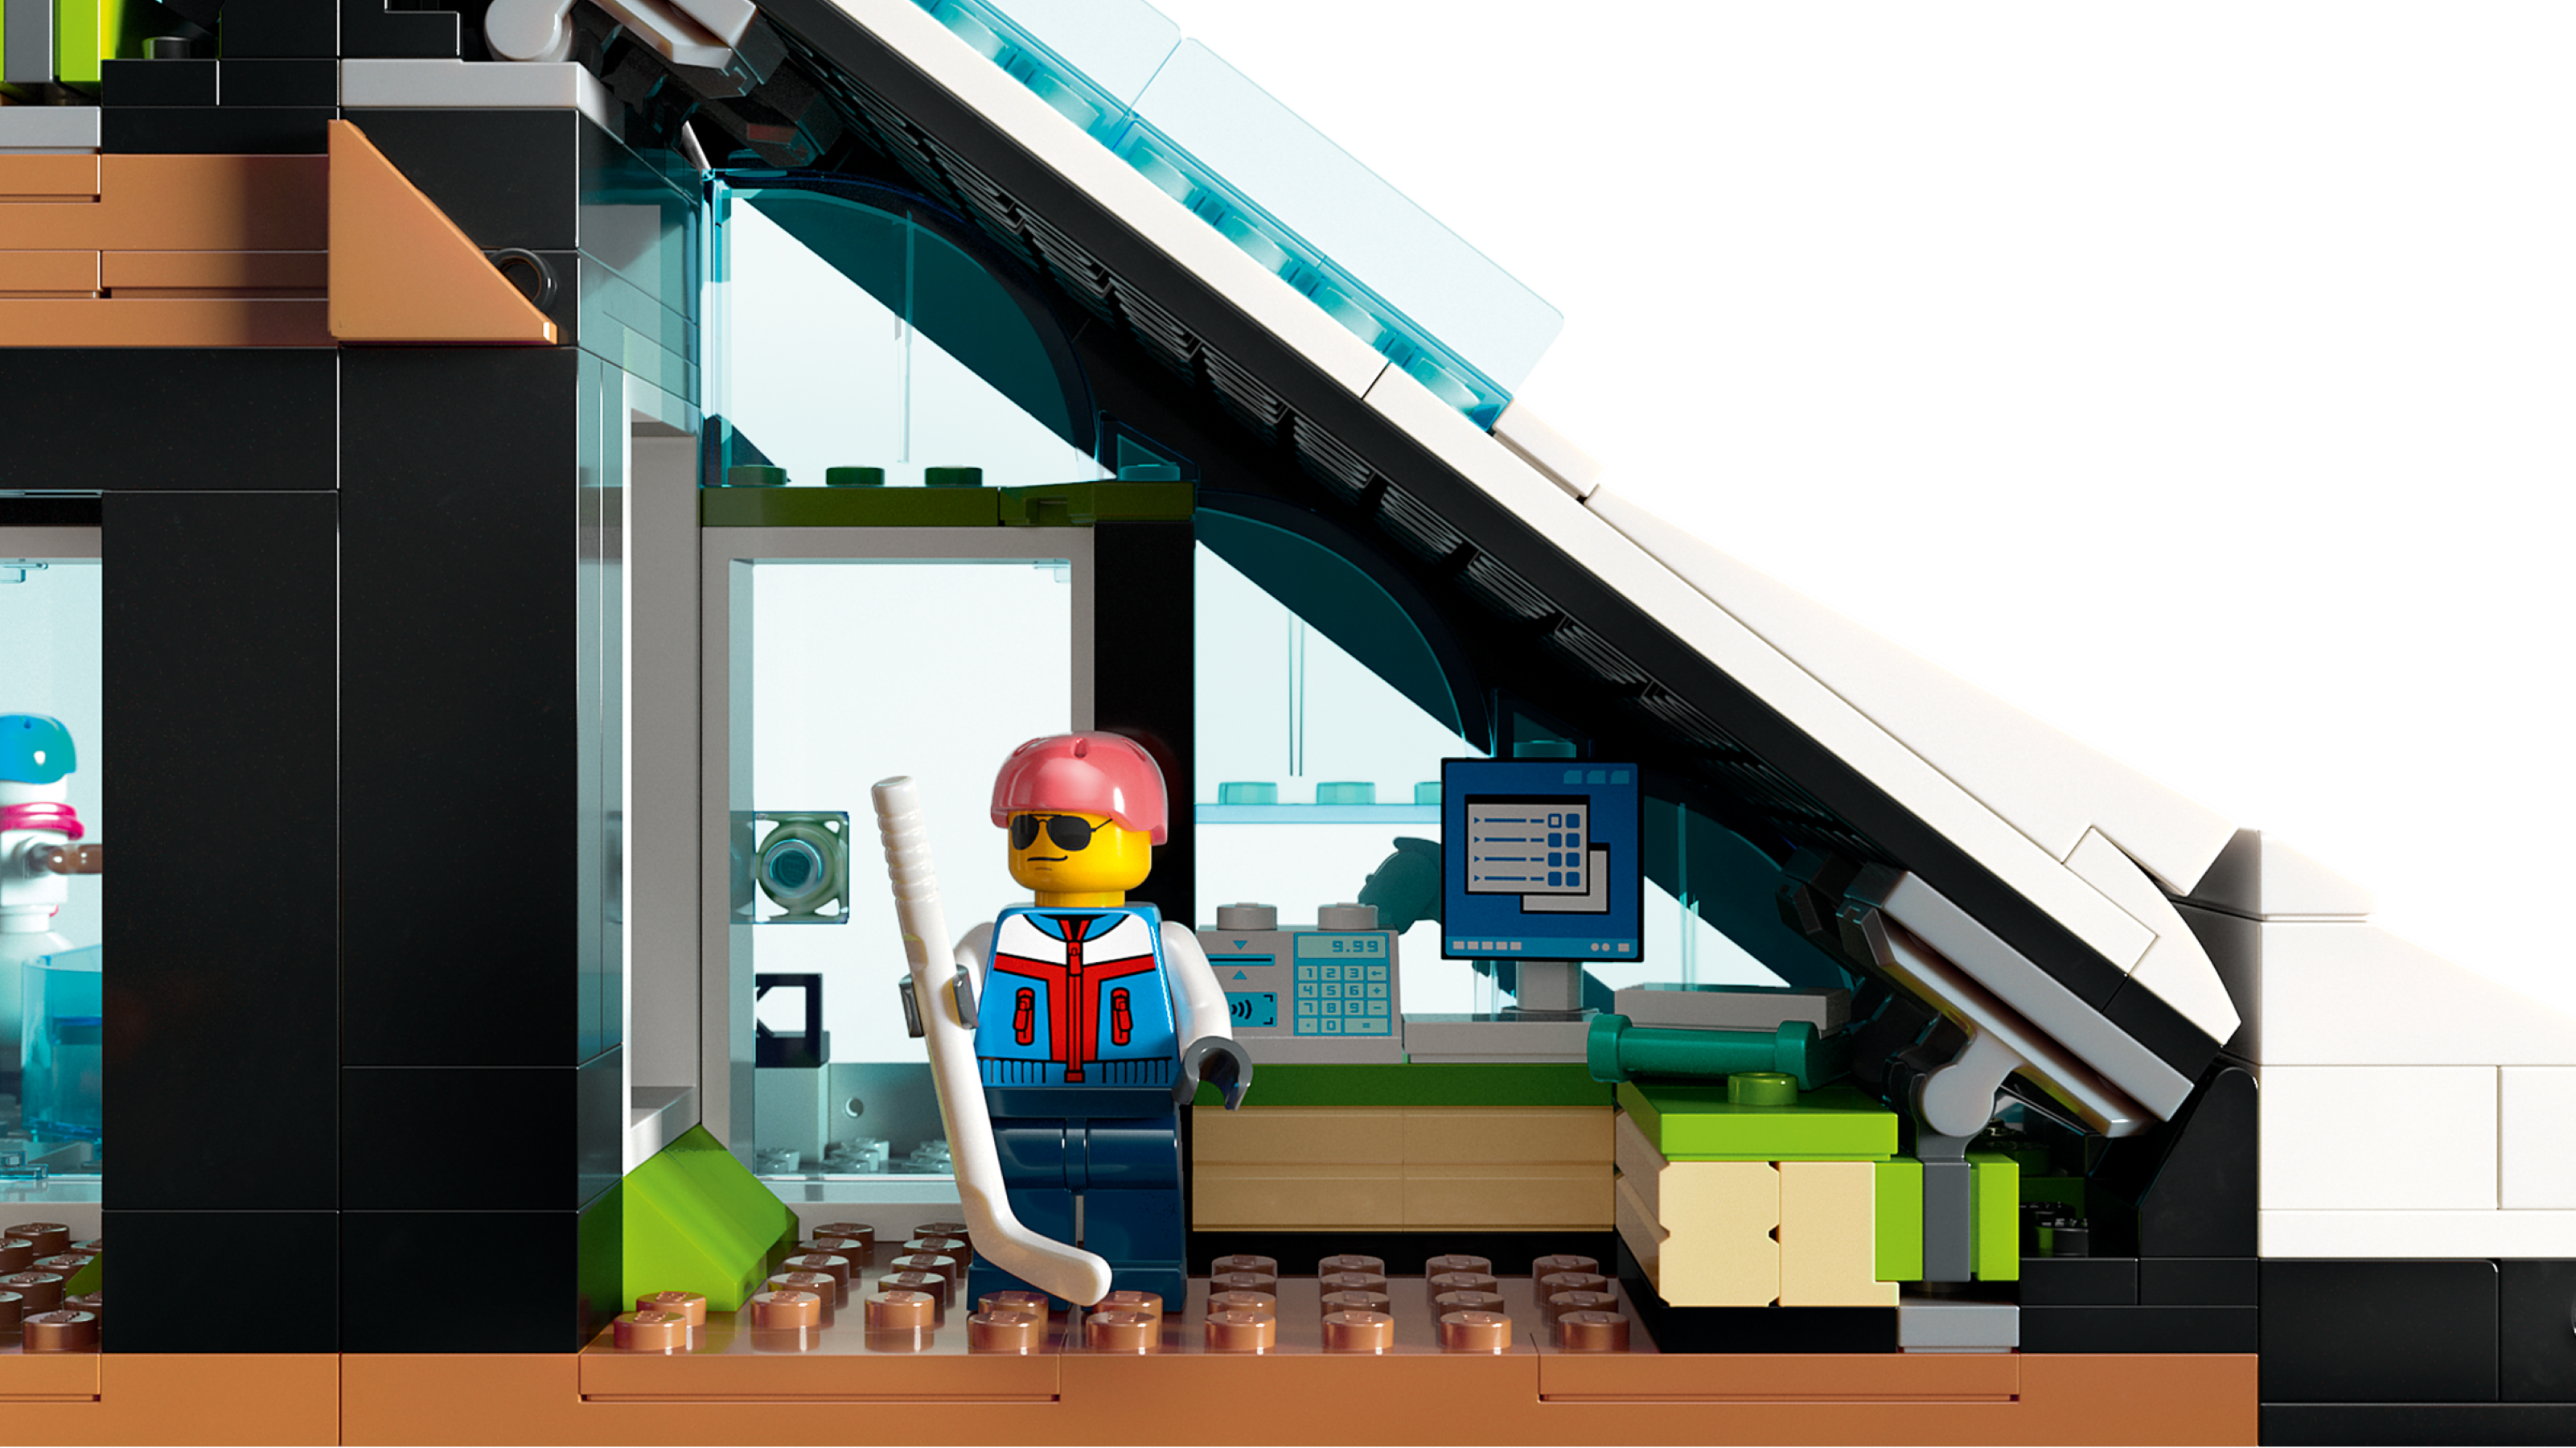 LEGO City 60366 Centro Sci e Arrampicata, Modular Building Set a 3 Livelli  con Pista e 8 Minifigure, Regalo per Bambini 7+ - LEGO - My City - Edifici  e architettura - Giocattoli